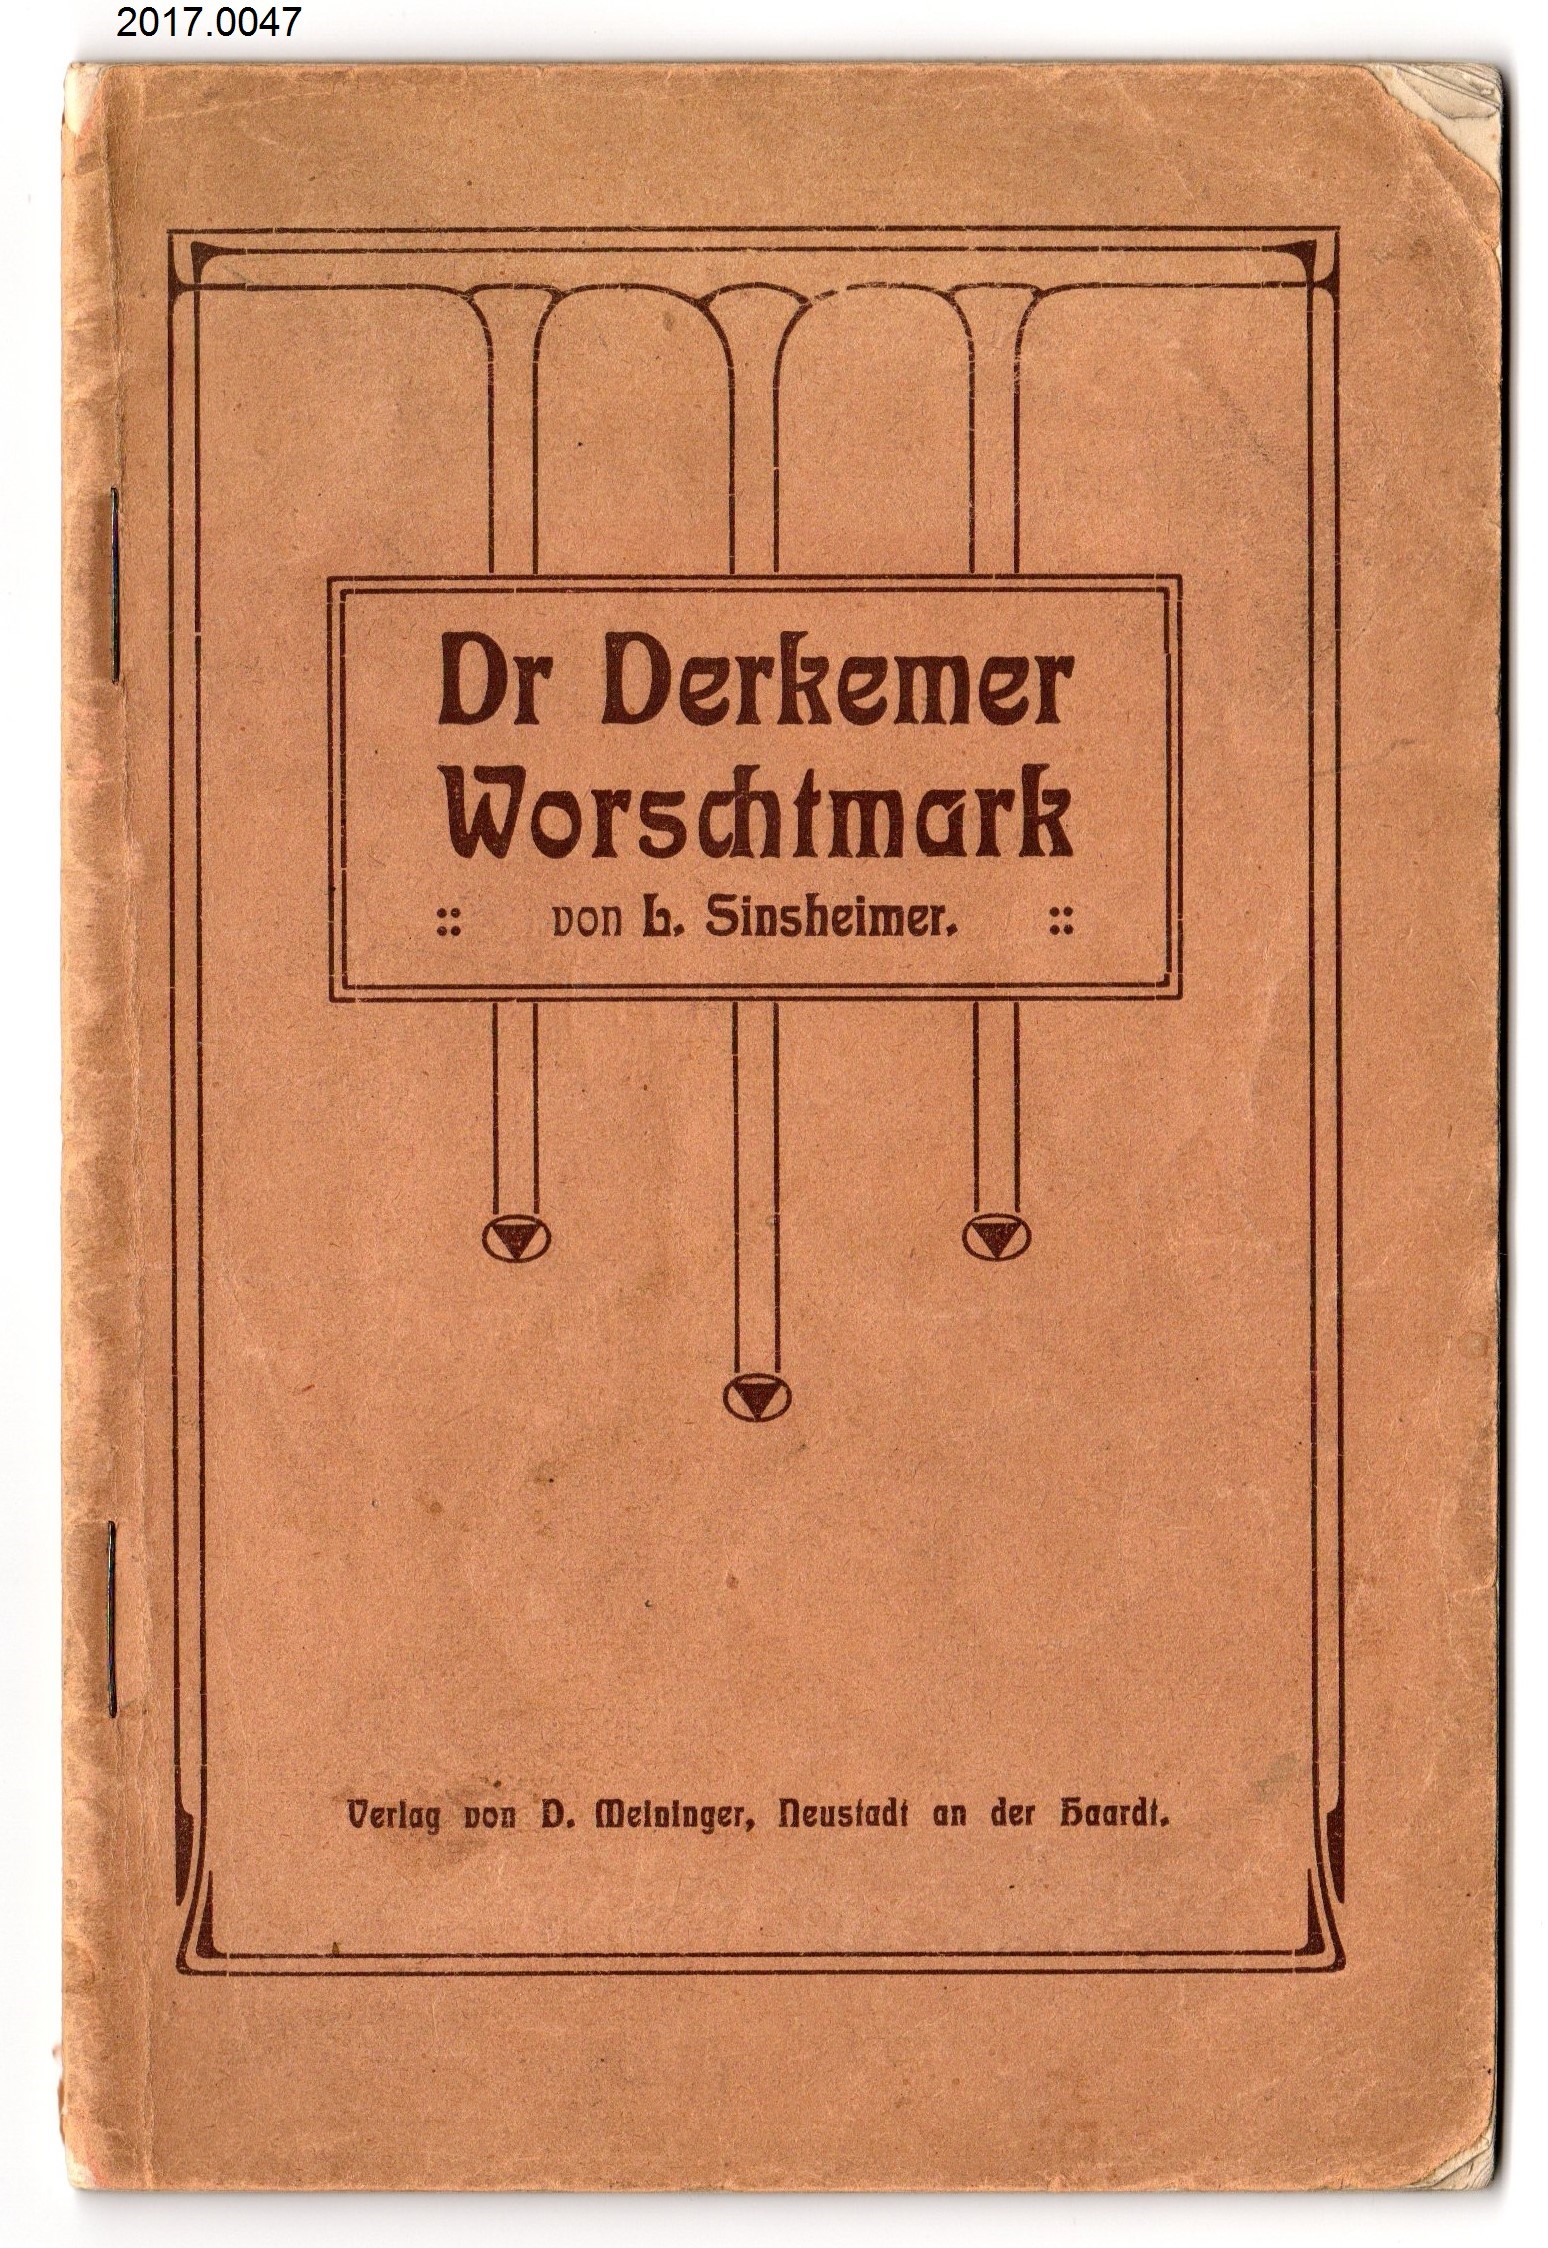 Heft "Dr Derkemer Worschtmark" v. L. Sinsheimer (Stadtmuseum Bad Dürkheim, Museumsgesellschaft Bad Dürkheim e.V. CC BY-NC-SA)